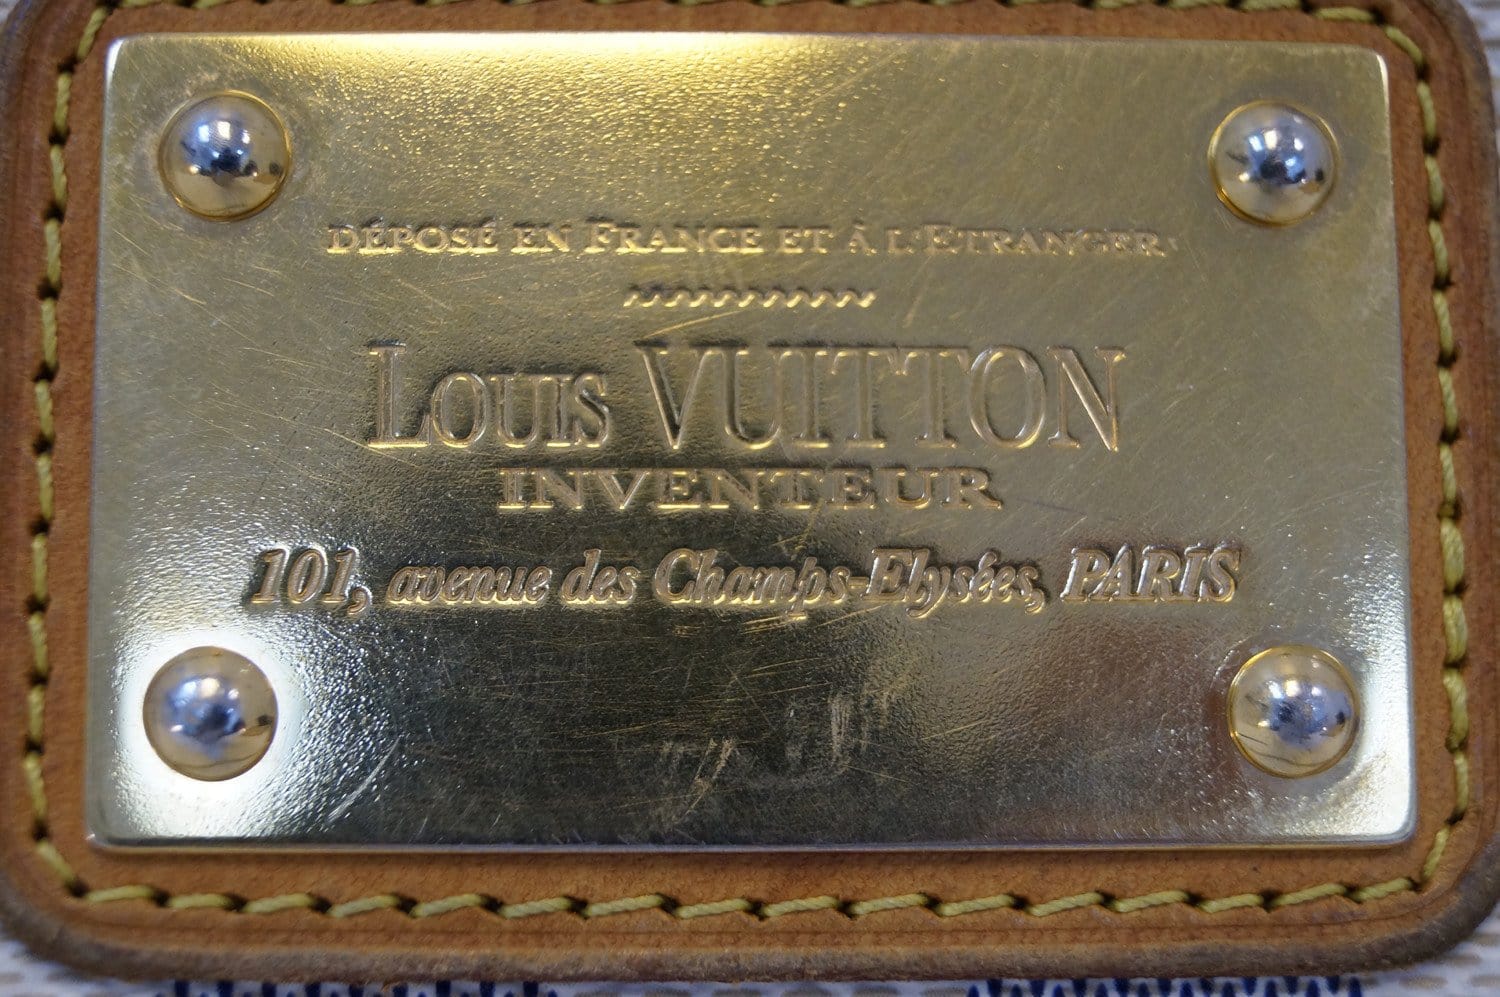 Louis Vuitton Damier Azur Eva Pochette - Neutrals Shoulder Bags, Handbags -  LOU799357